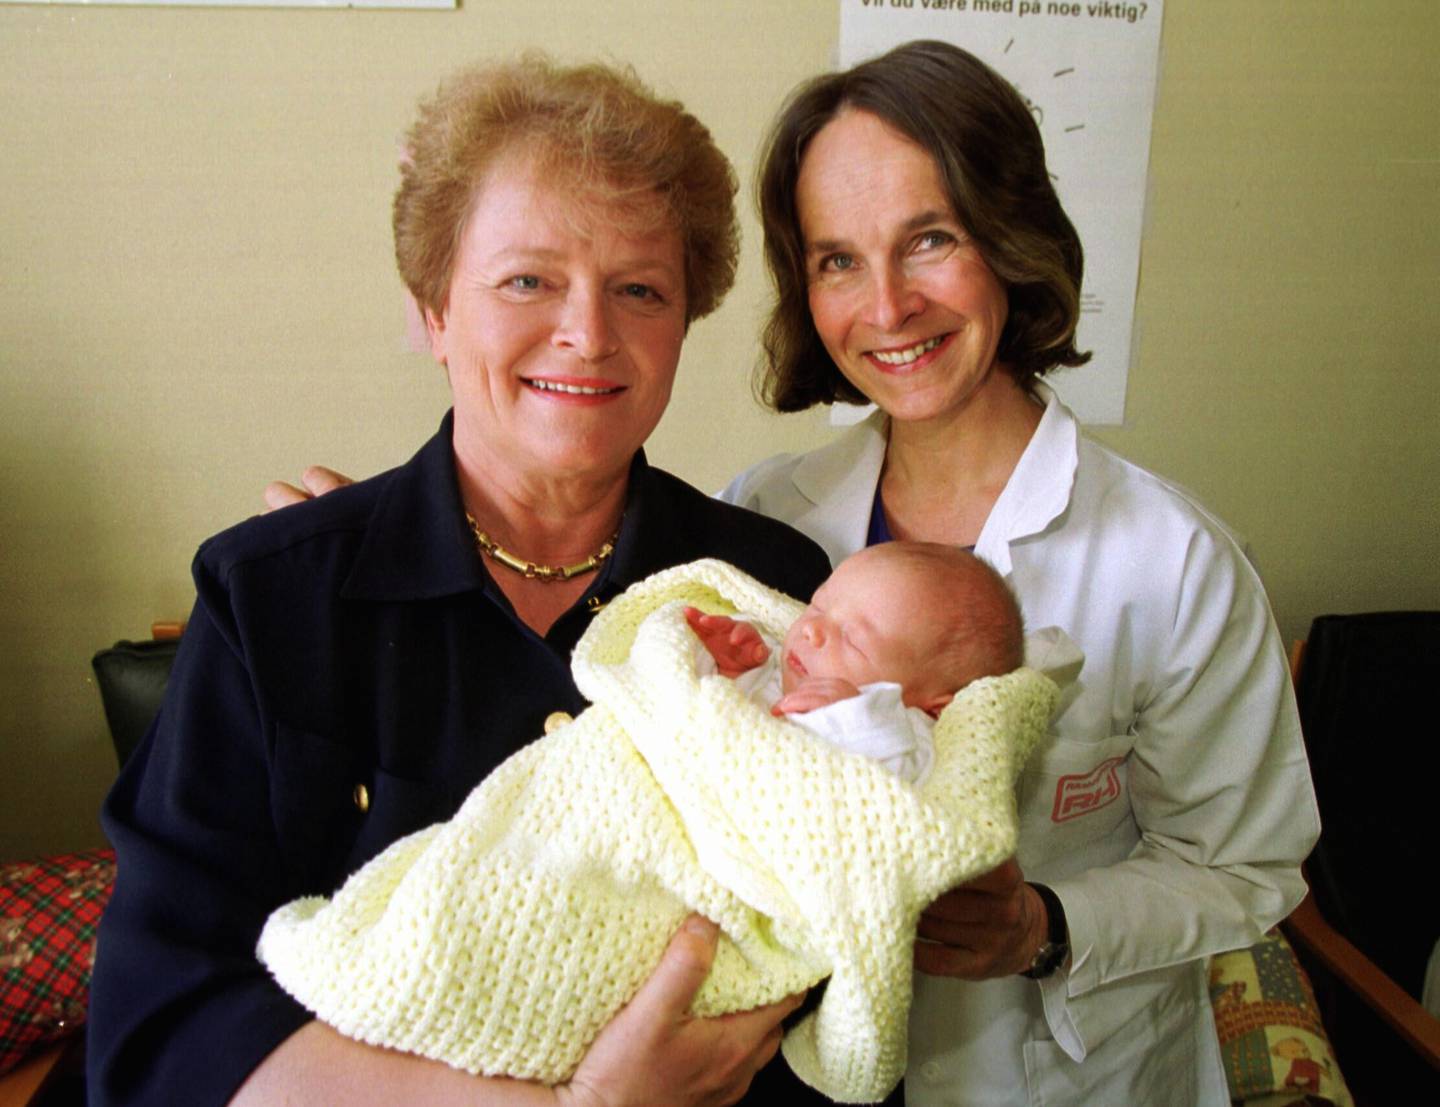 Gro Nylander sammen med daværende WHO-leder og tidligere statsminister Gro Harlem Brundtland under åpningen av Nasjonalt Ammesenter på Rikshospitalet i Oslo i 1999. Her sammen med fem dager gamle Narve. Nylander var overlege ved kvinneklinikken på denne tiden.